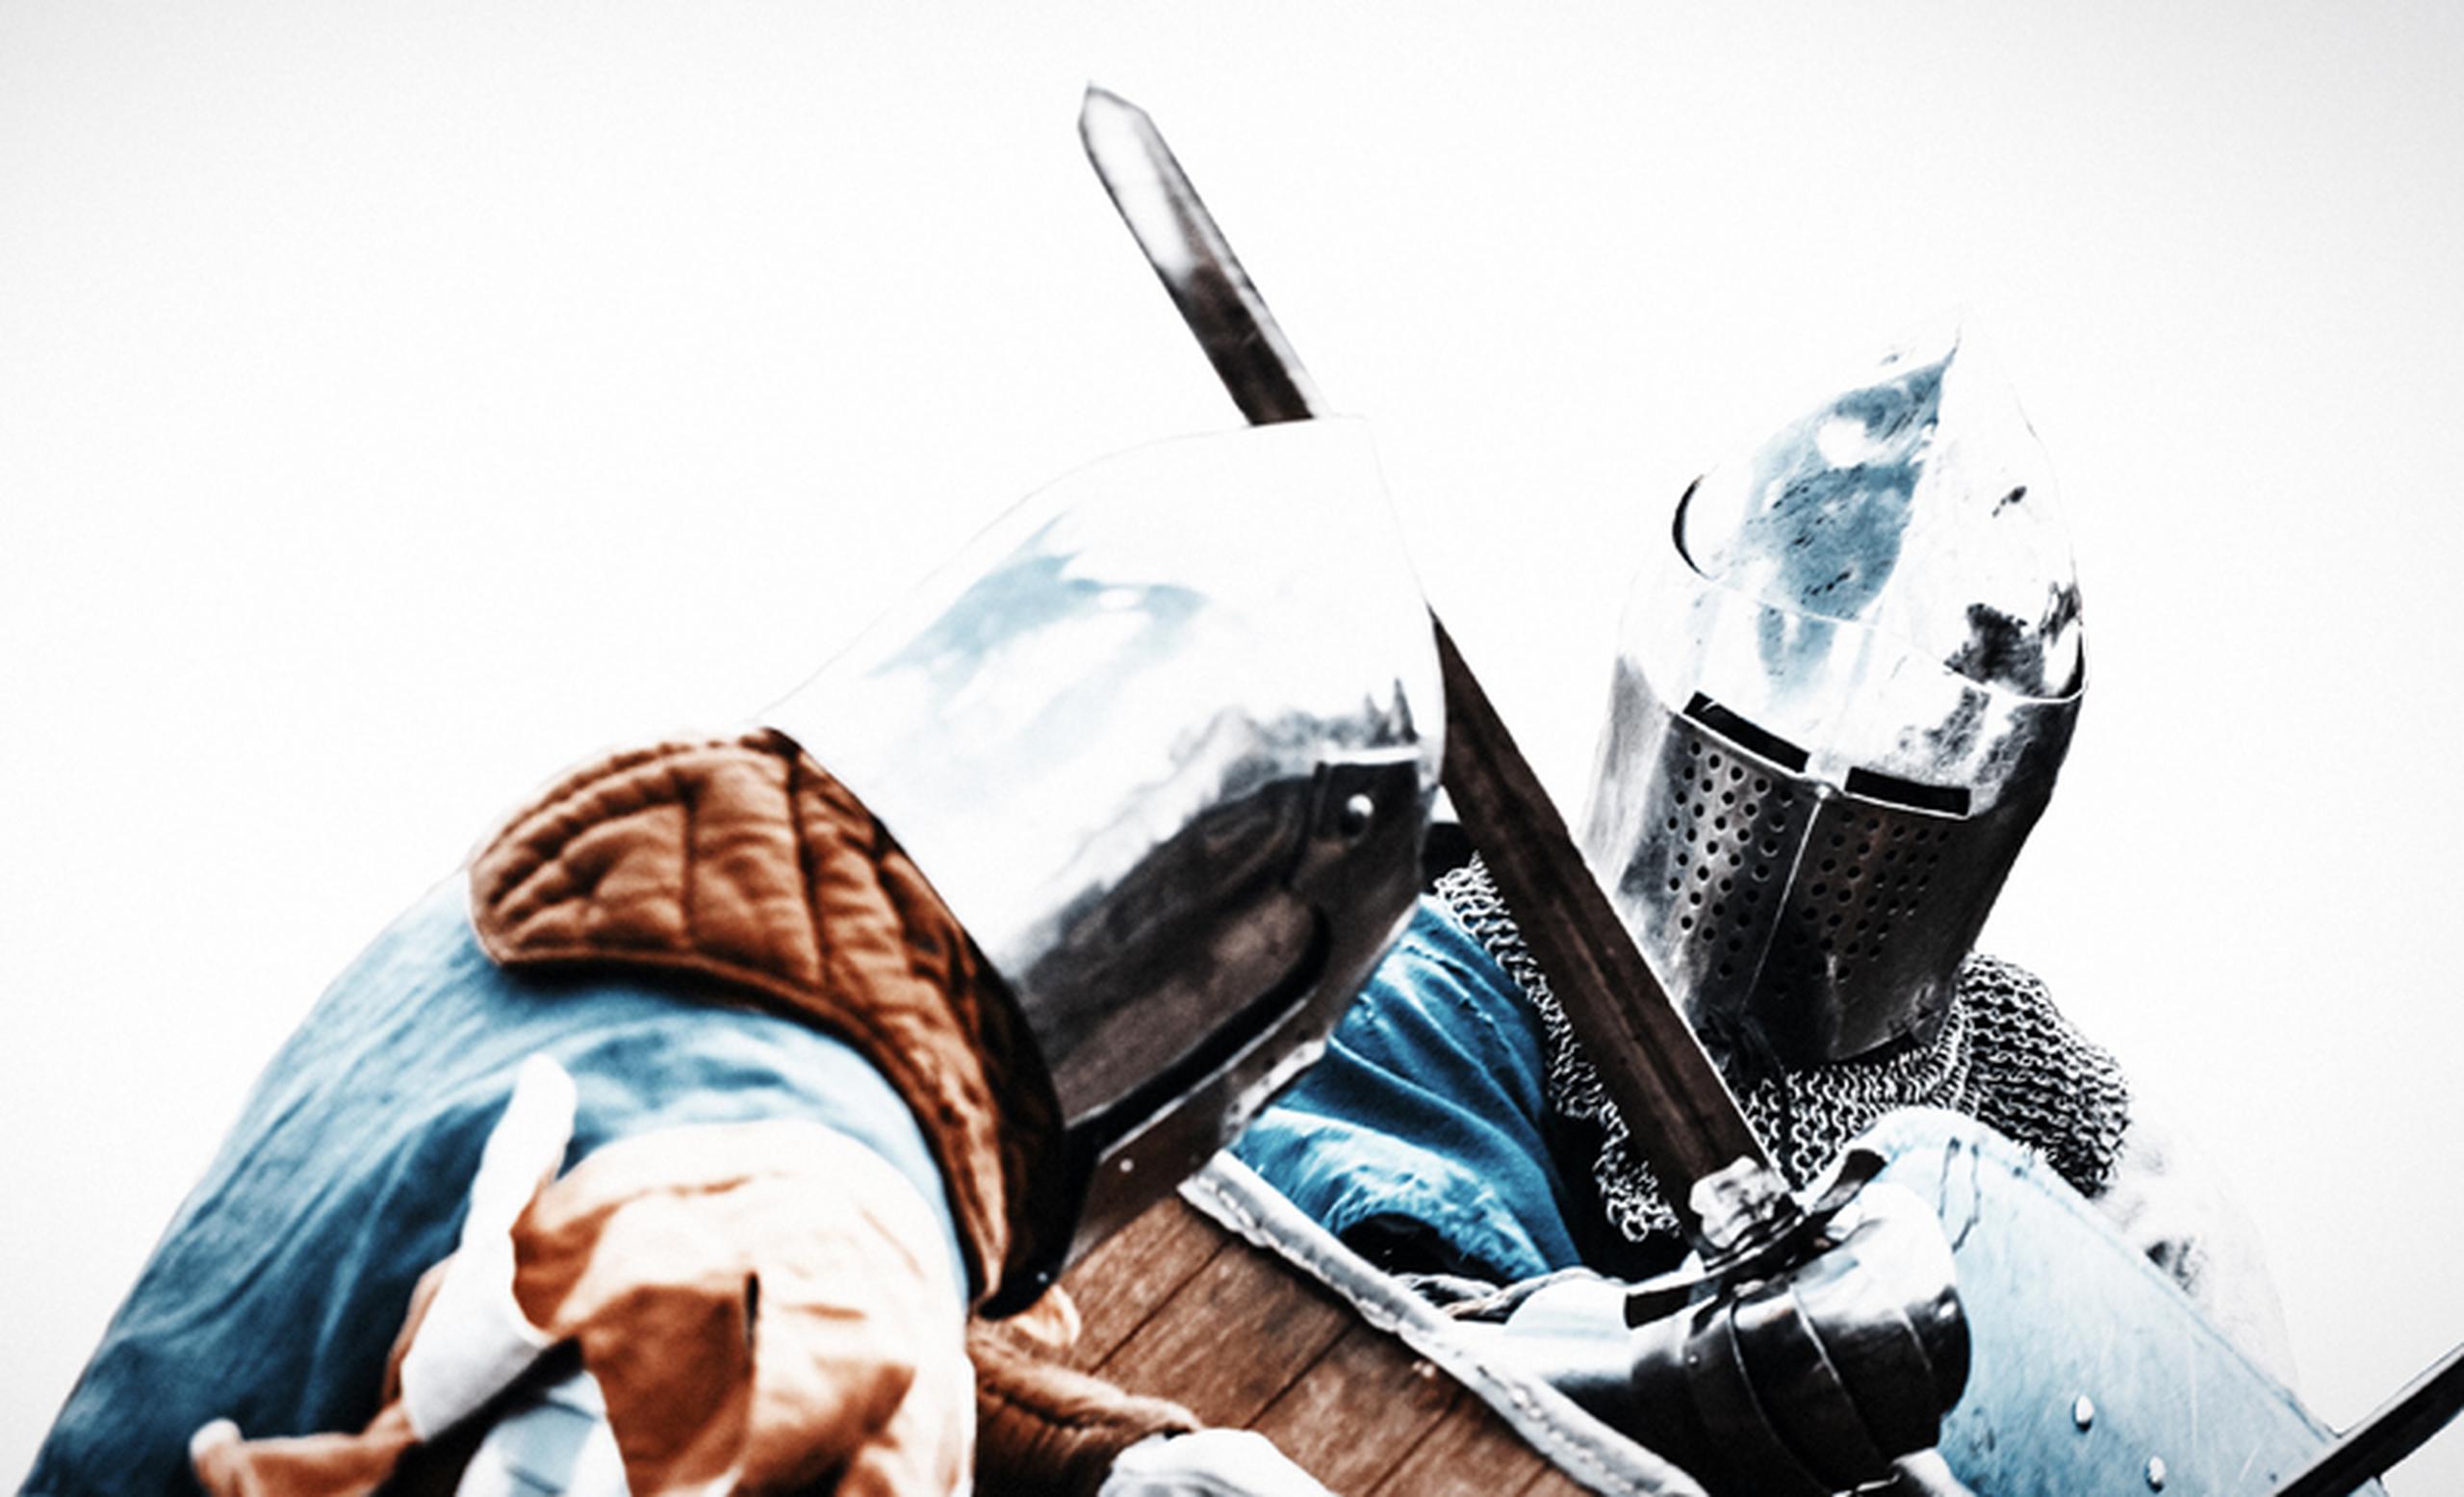 En la Edad Media, los caballeros practicaban la esgrima con unas armas de hierro sin filo y con una especie de botón en la punta para no herir al oponente. A esas espadas se les llamaban ‘armas negras’.